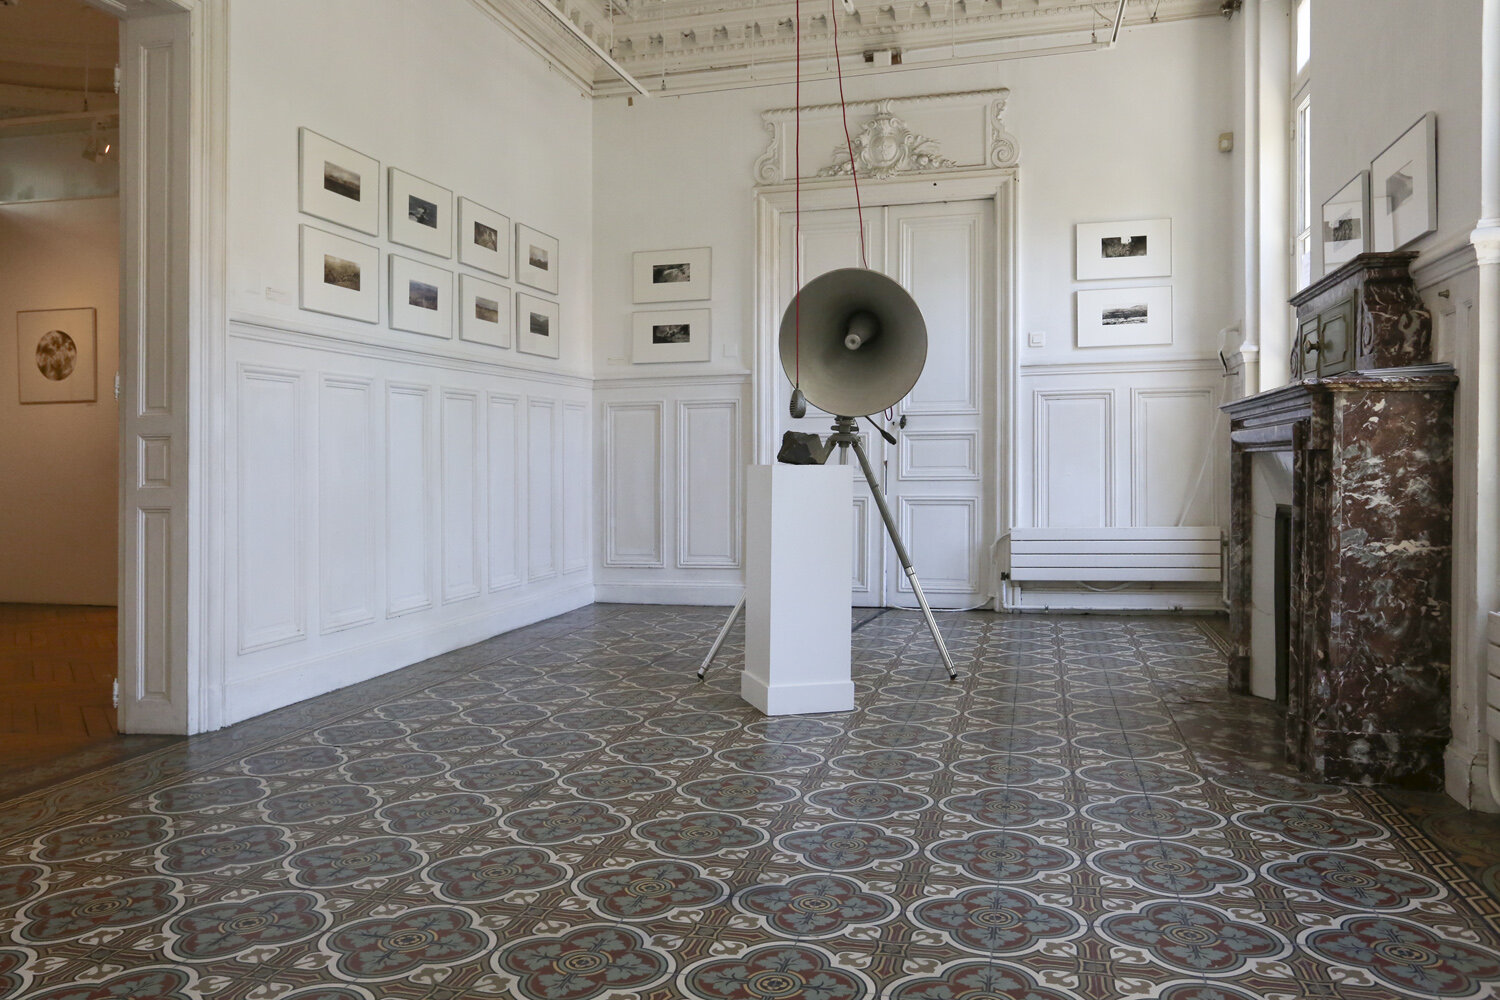 Installation view, Fabuler des mondes, Solo show, Curator:  Simon Psaltopoulos, space Jean Cocteau, Les Lilas, France